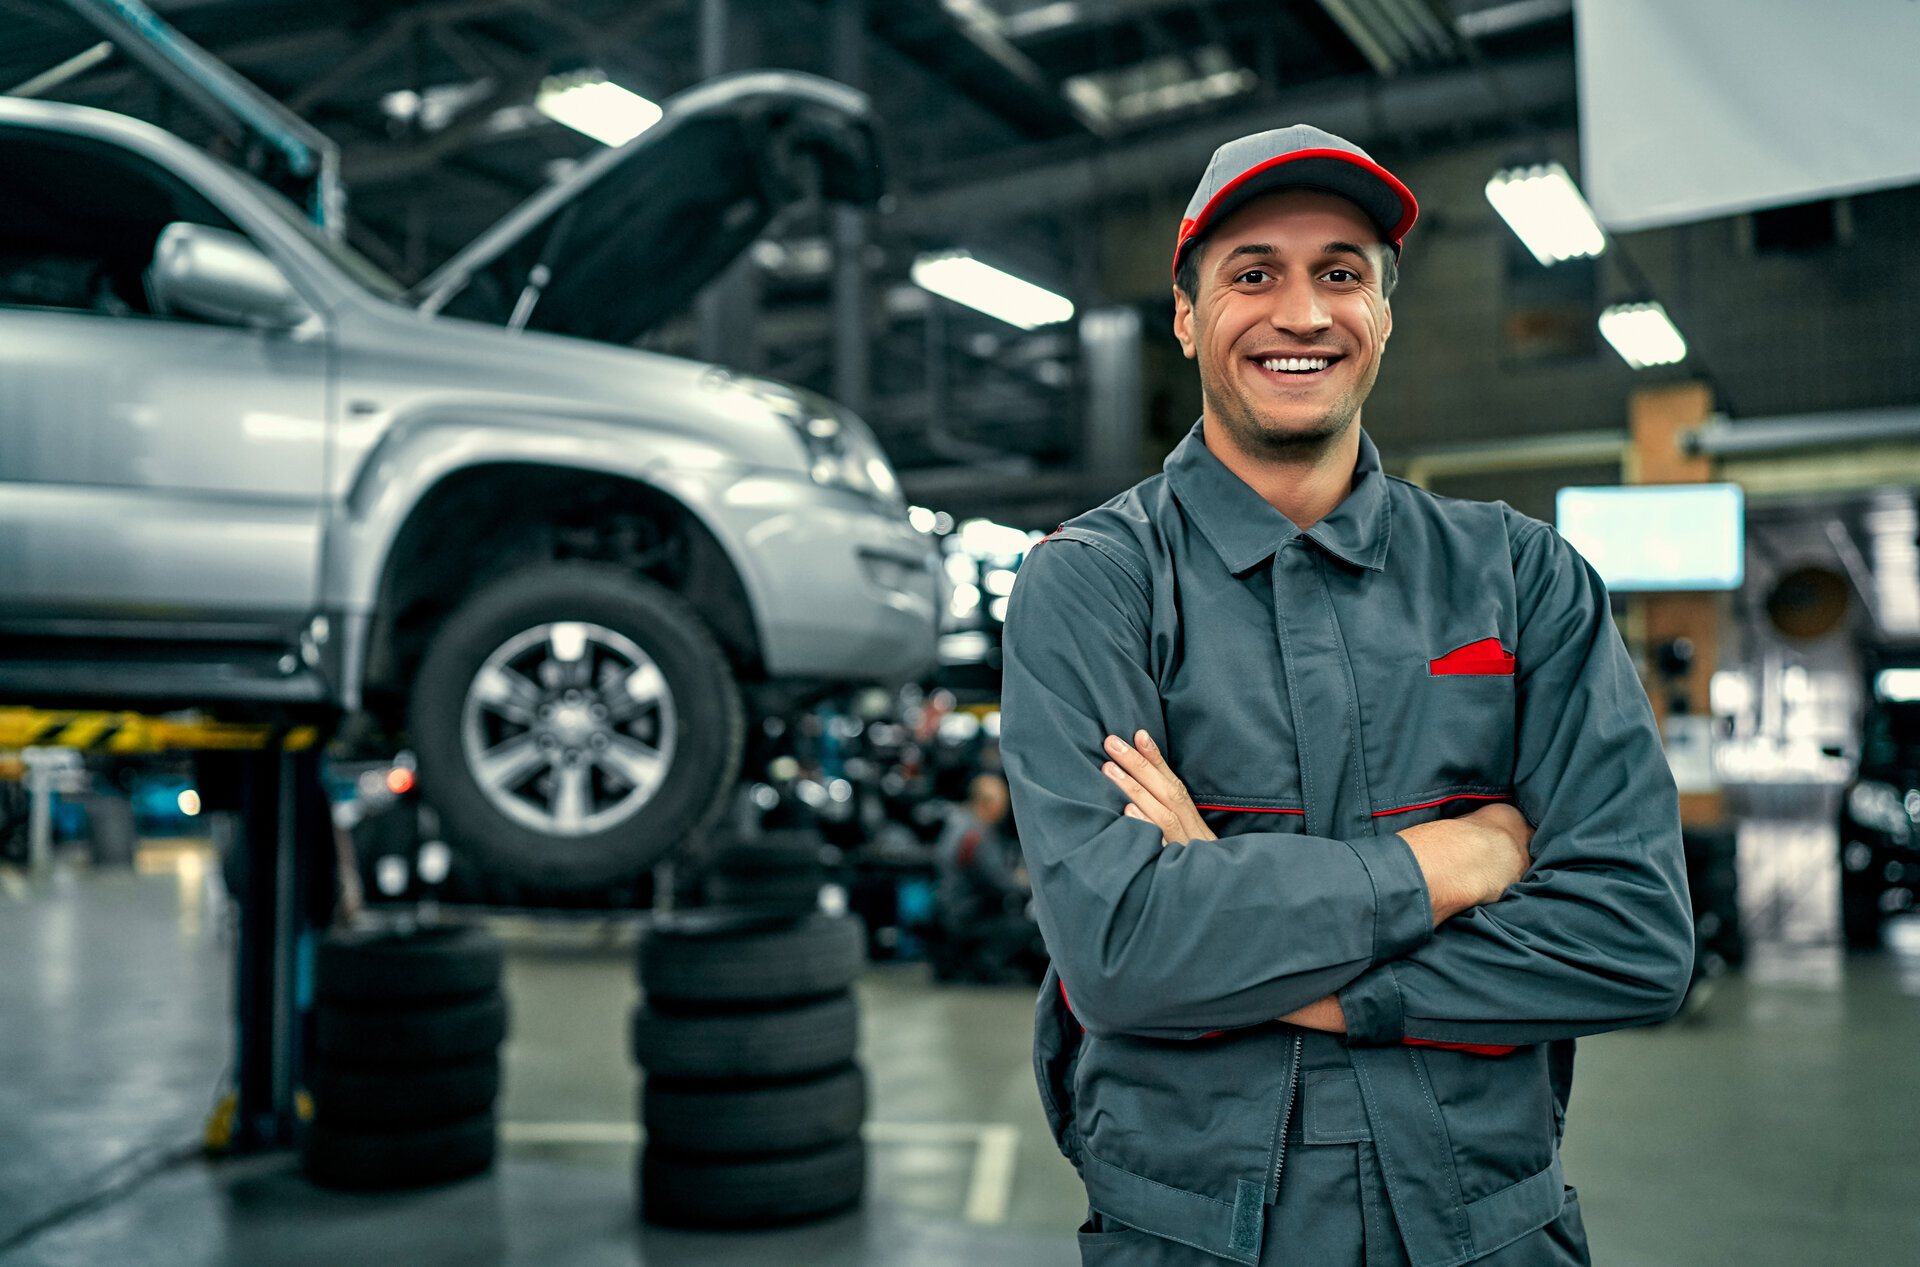 Auto-Service-Mechaniker in Uniform steht auf dem Hintergrund des Autos mit offenen Motorhaube, lächelnd und Blick auf die Kamera. Autoreparatur und Wartung.